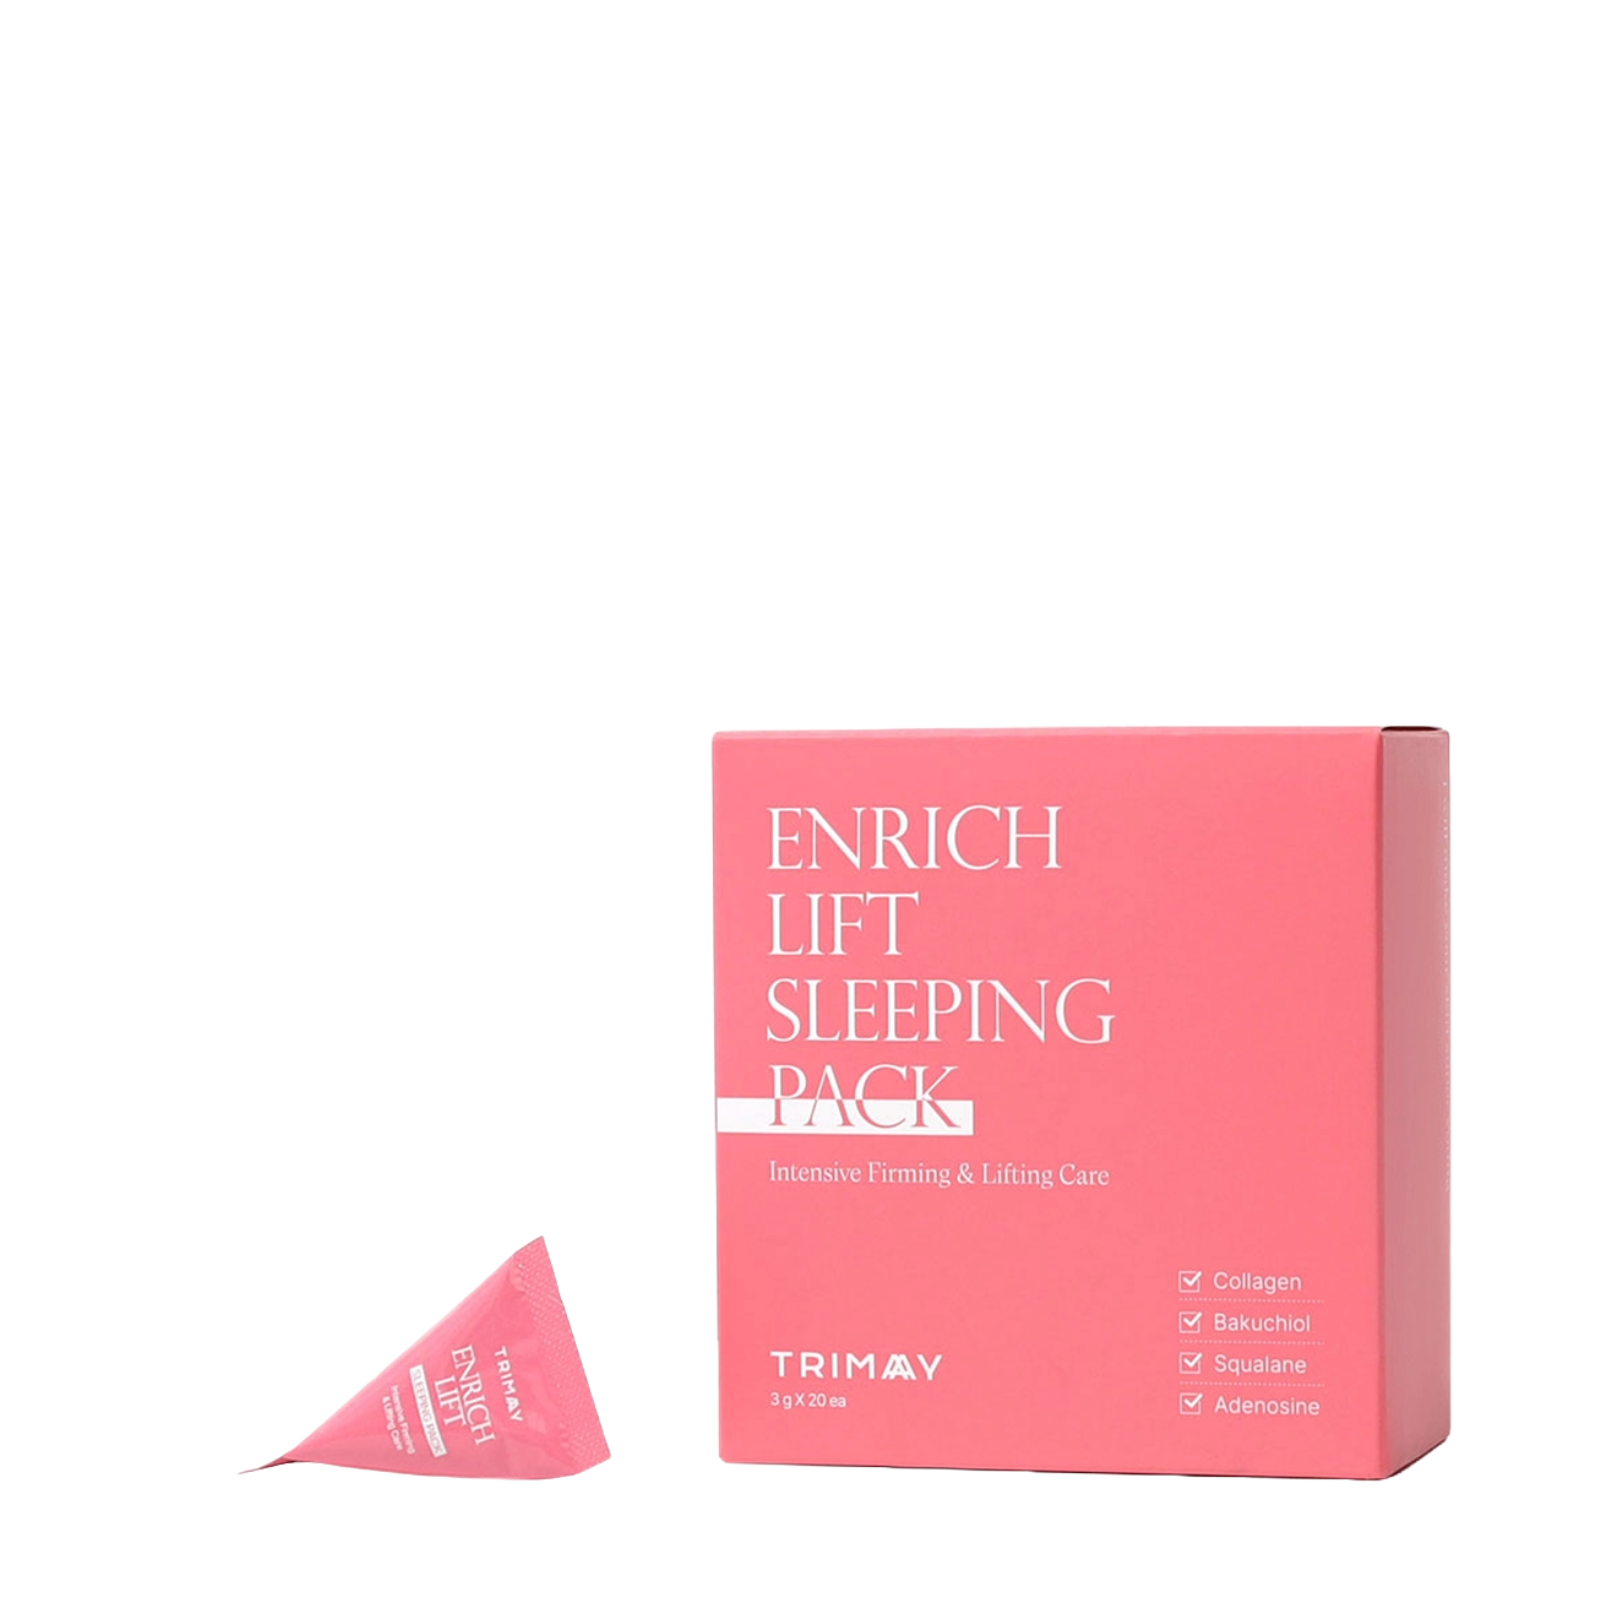 Ночная маска Trimay Enrich-Lift с коллагеном и бакучиолом (Trimay Enrich-Lift Sleeping Pack)